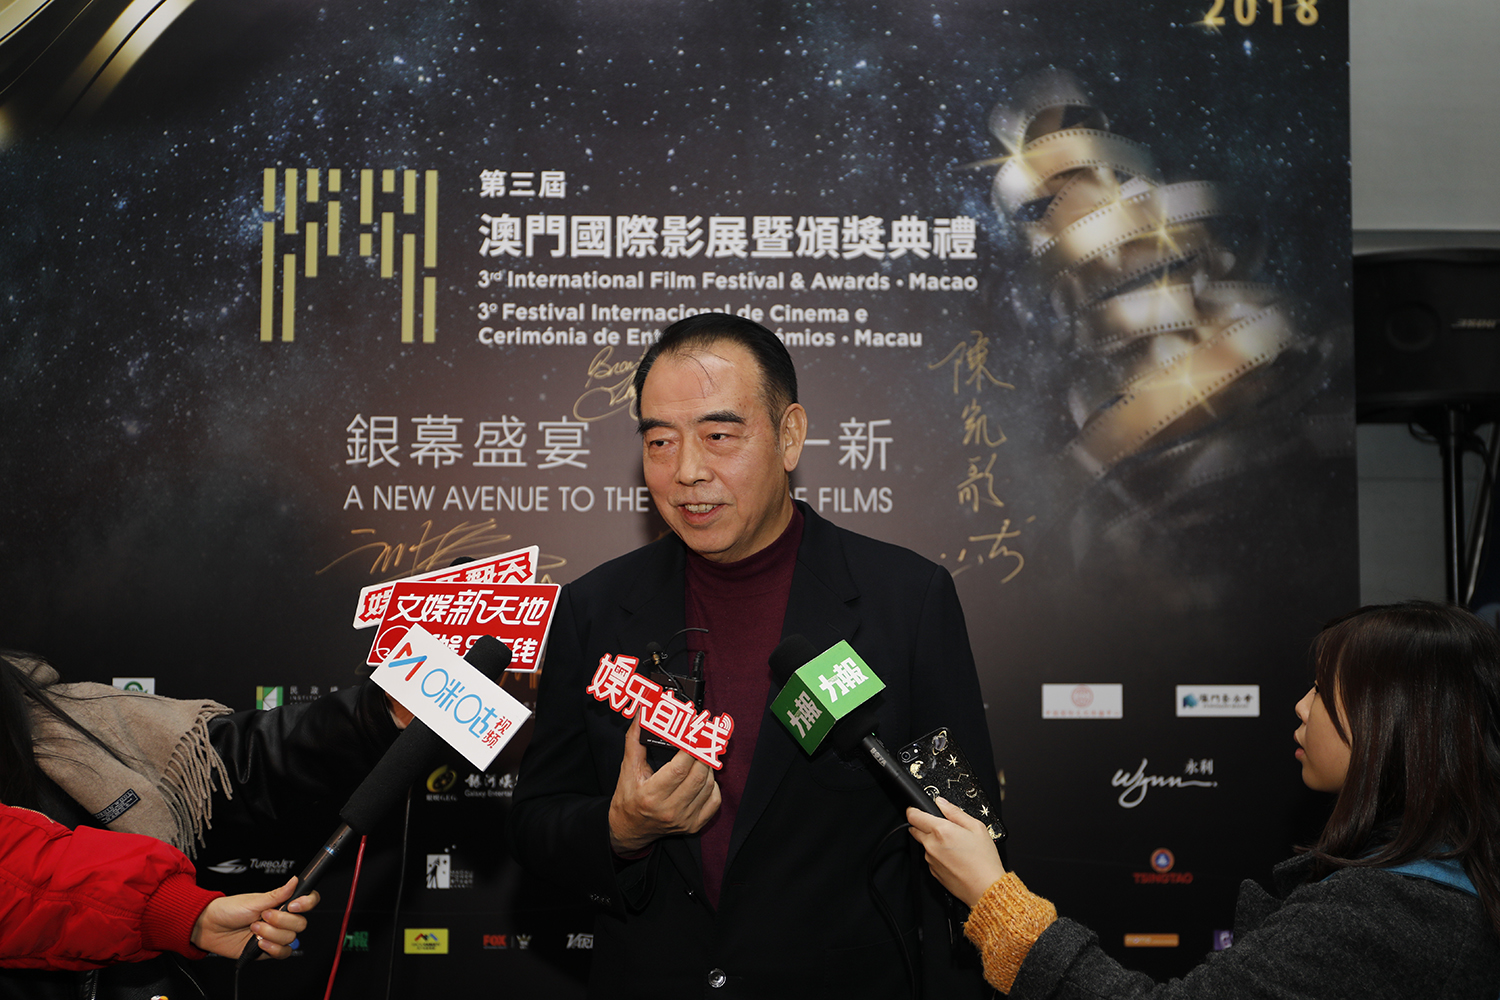 陳凱歌擔任第三屆澳門國際影展評委會主席 榮獲“電影精神成就獎”